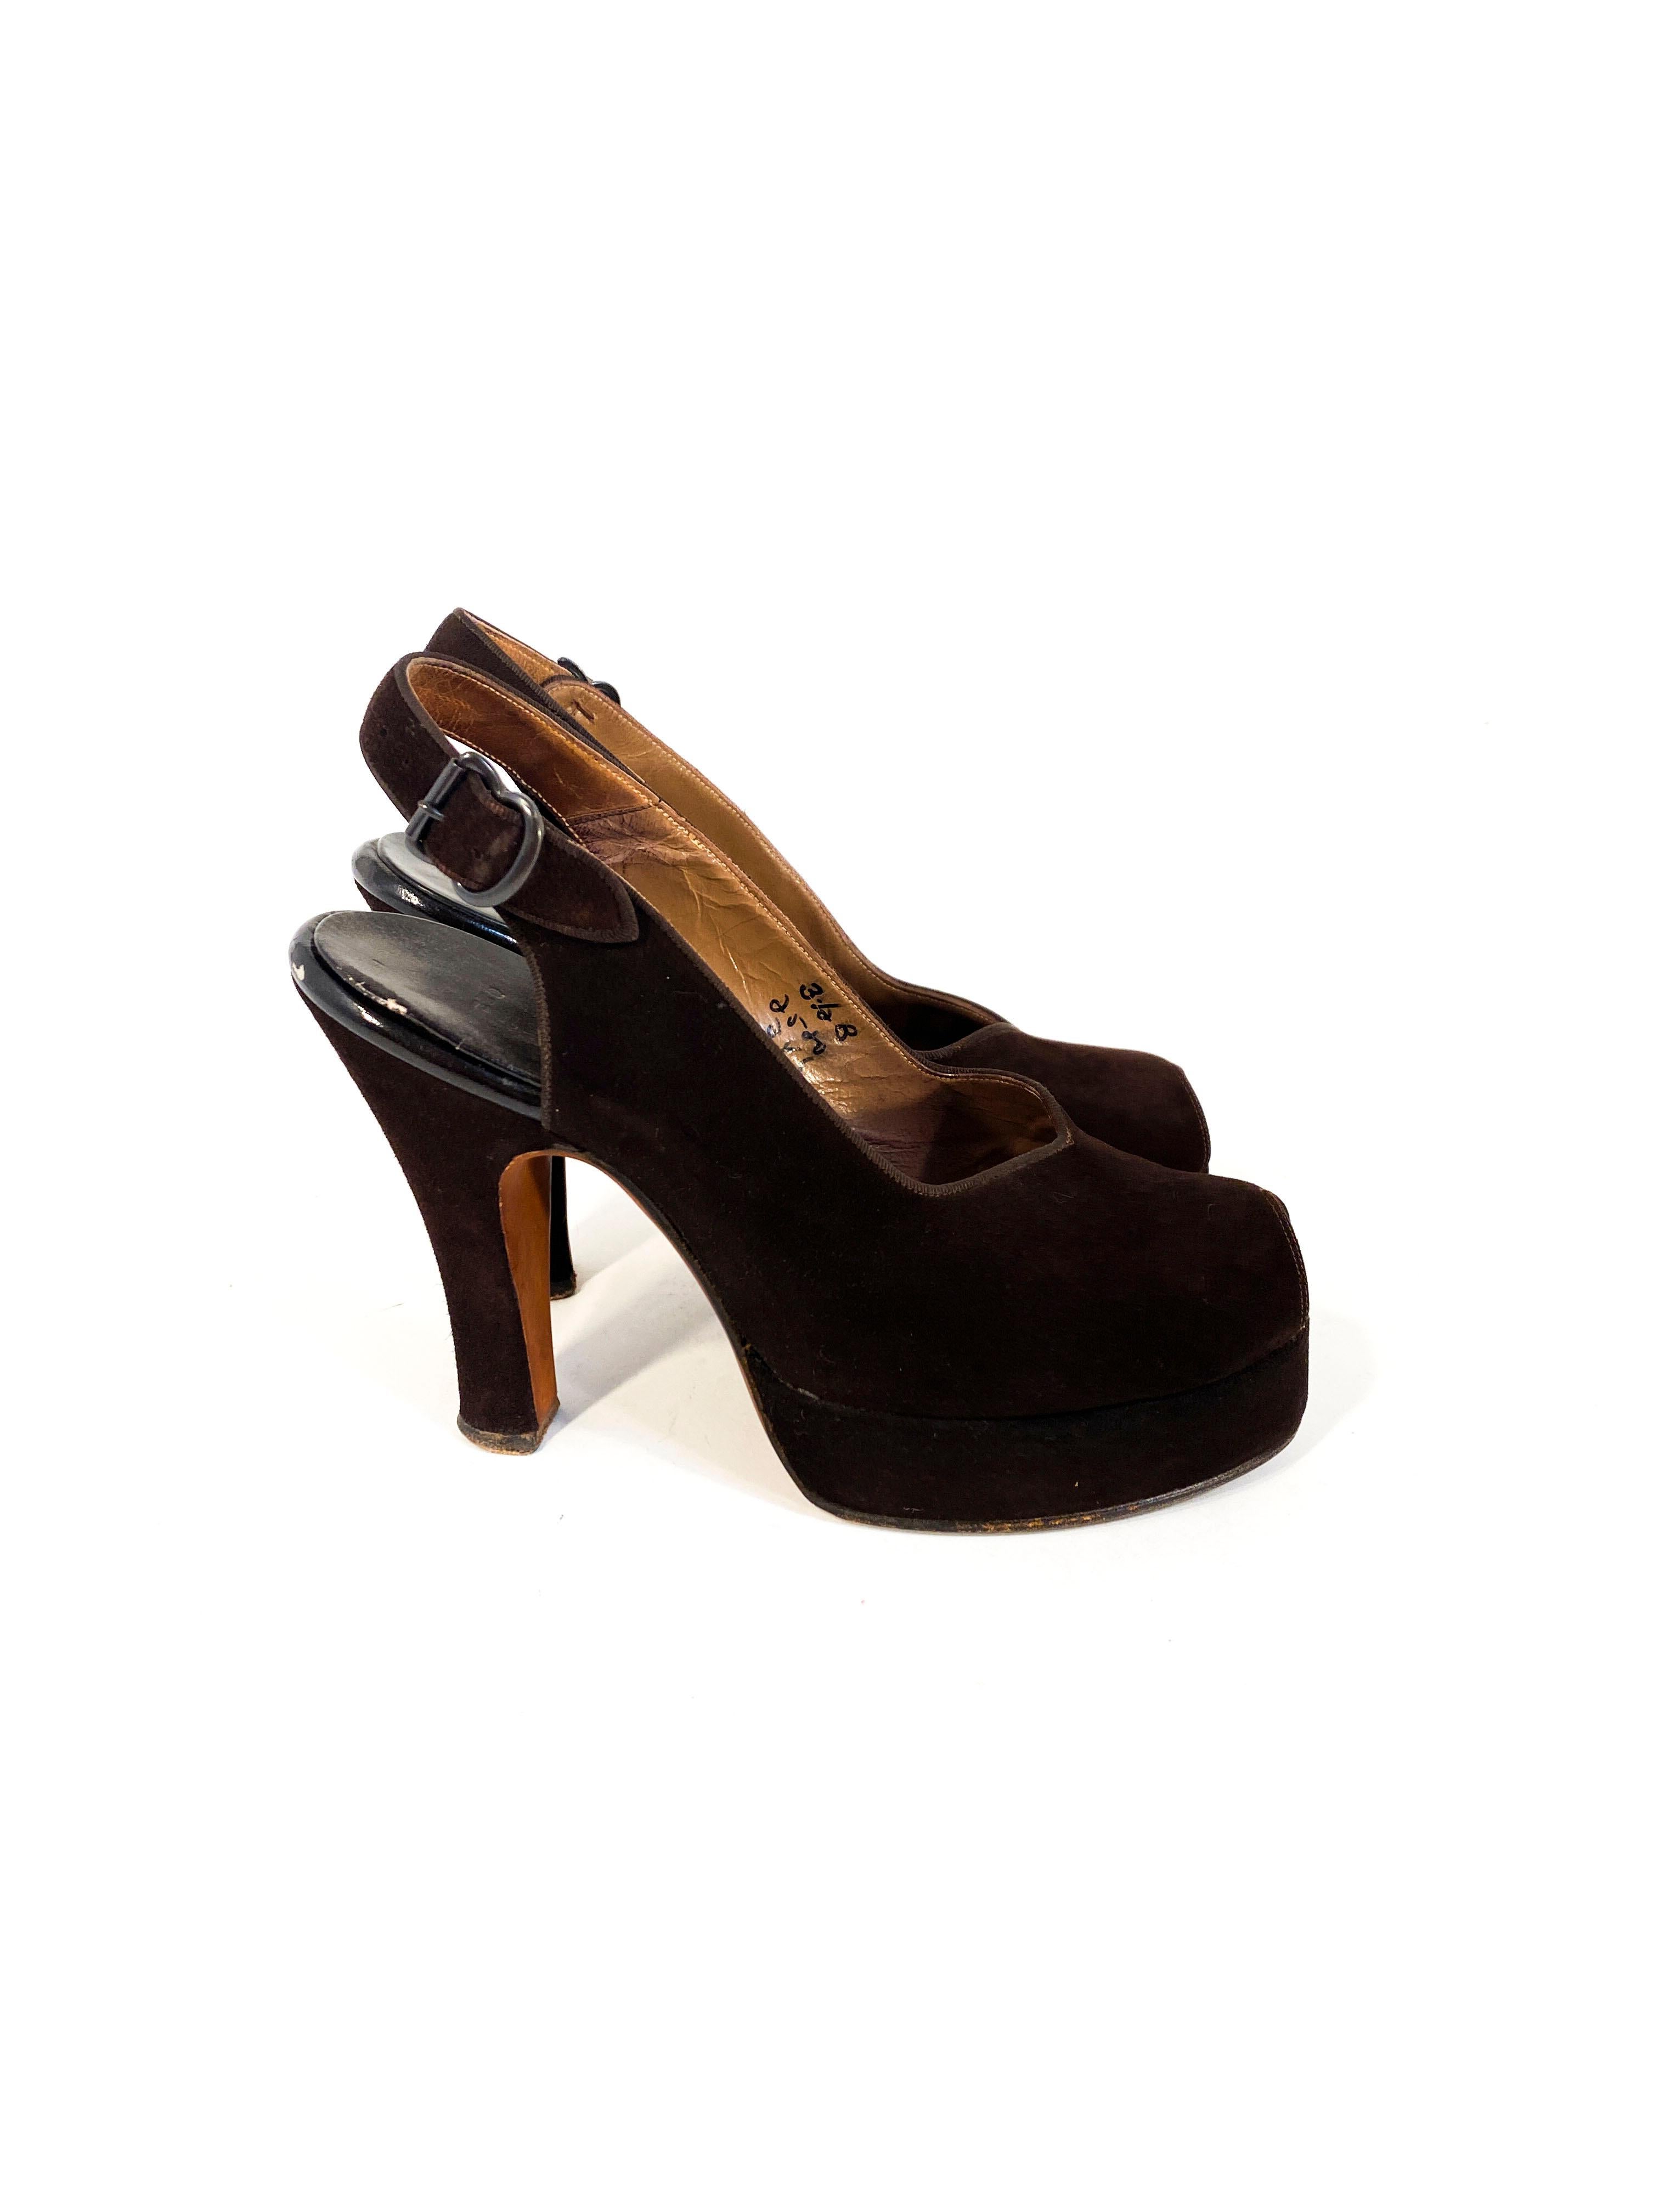 Noir Chaussures à talons compensés en daim marron des années 1940 en vente